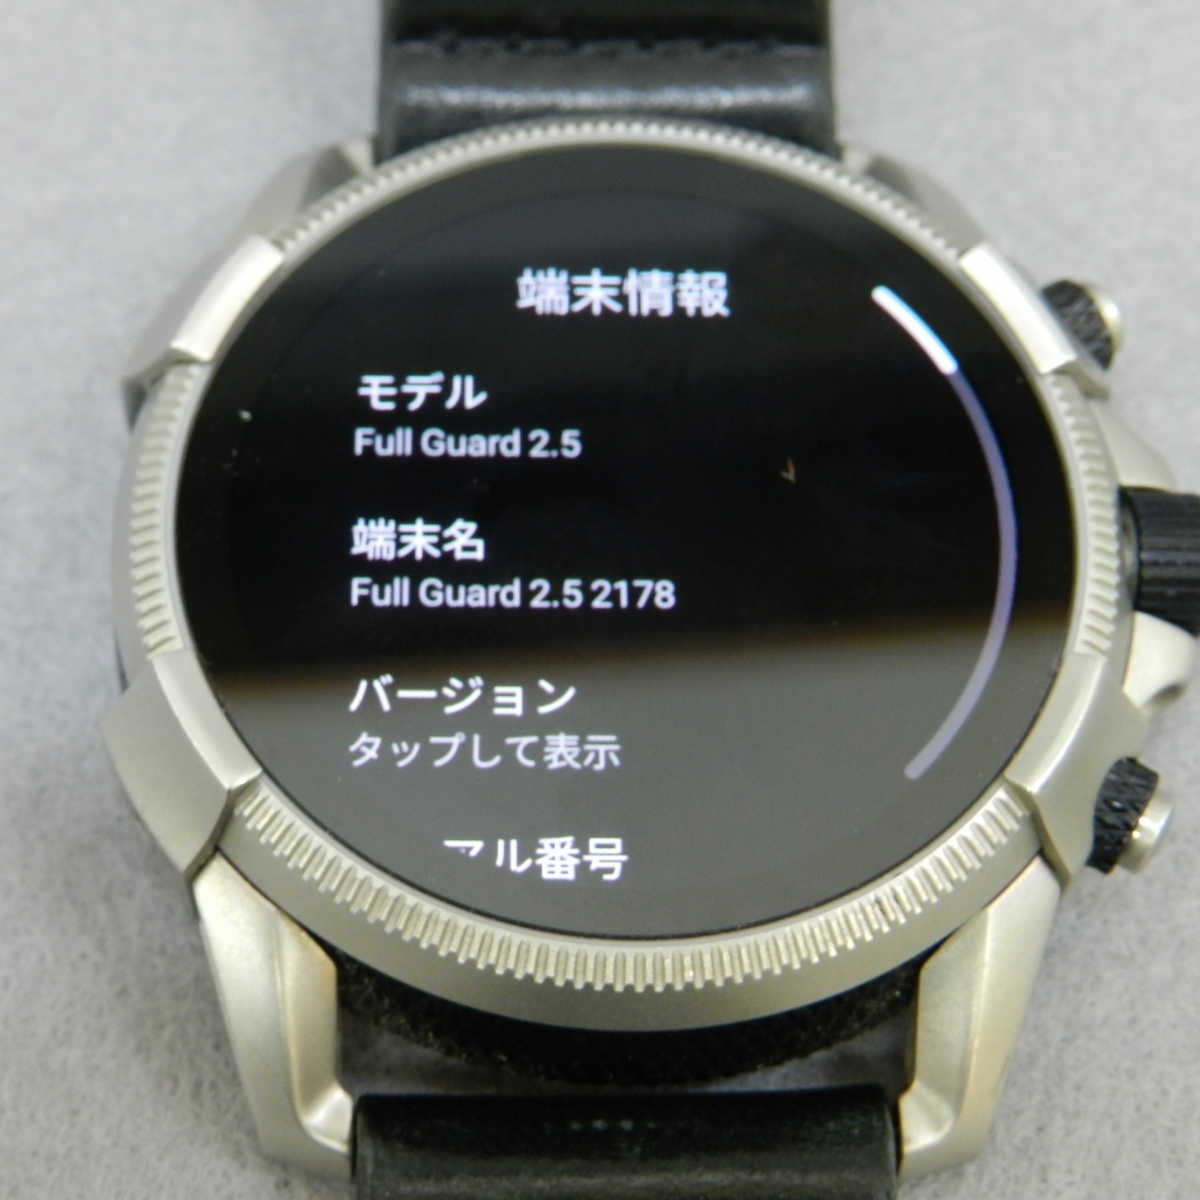 RKO308*DIESEL diesel smart watch * black DW601 DZT2008*A